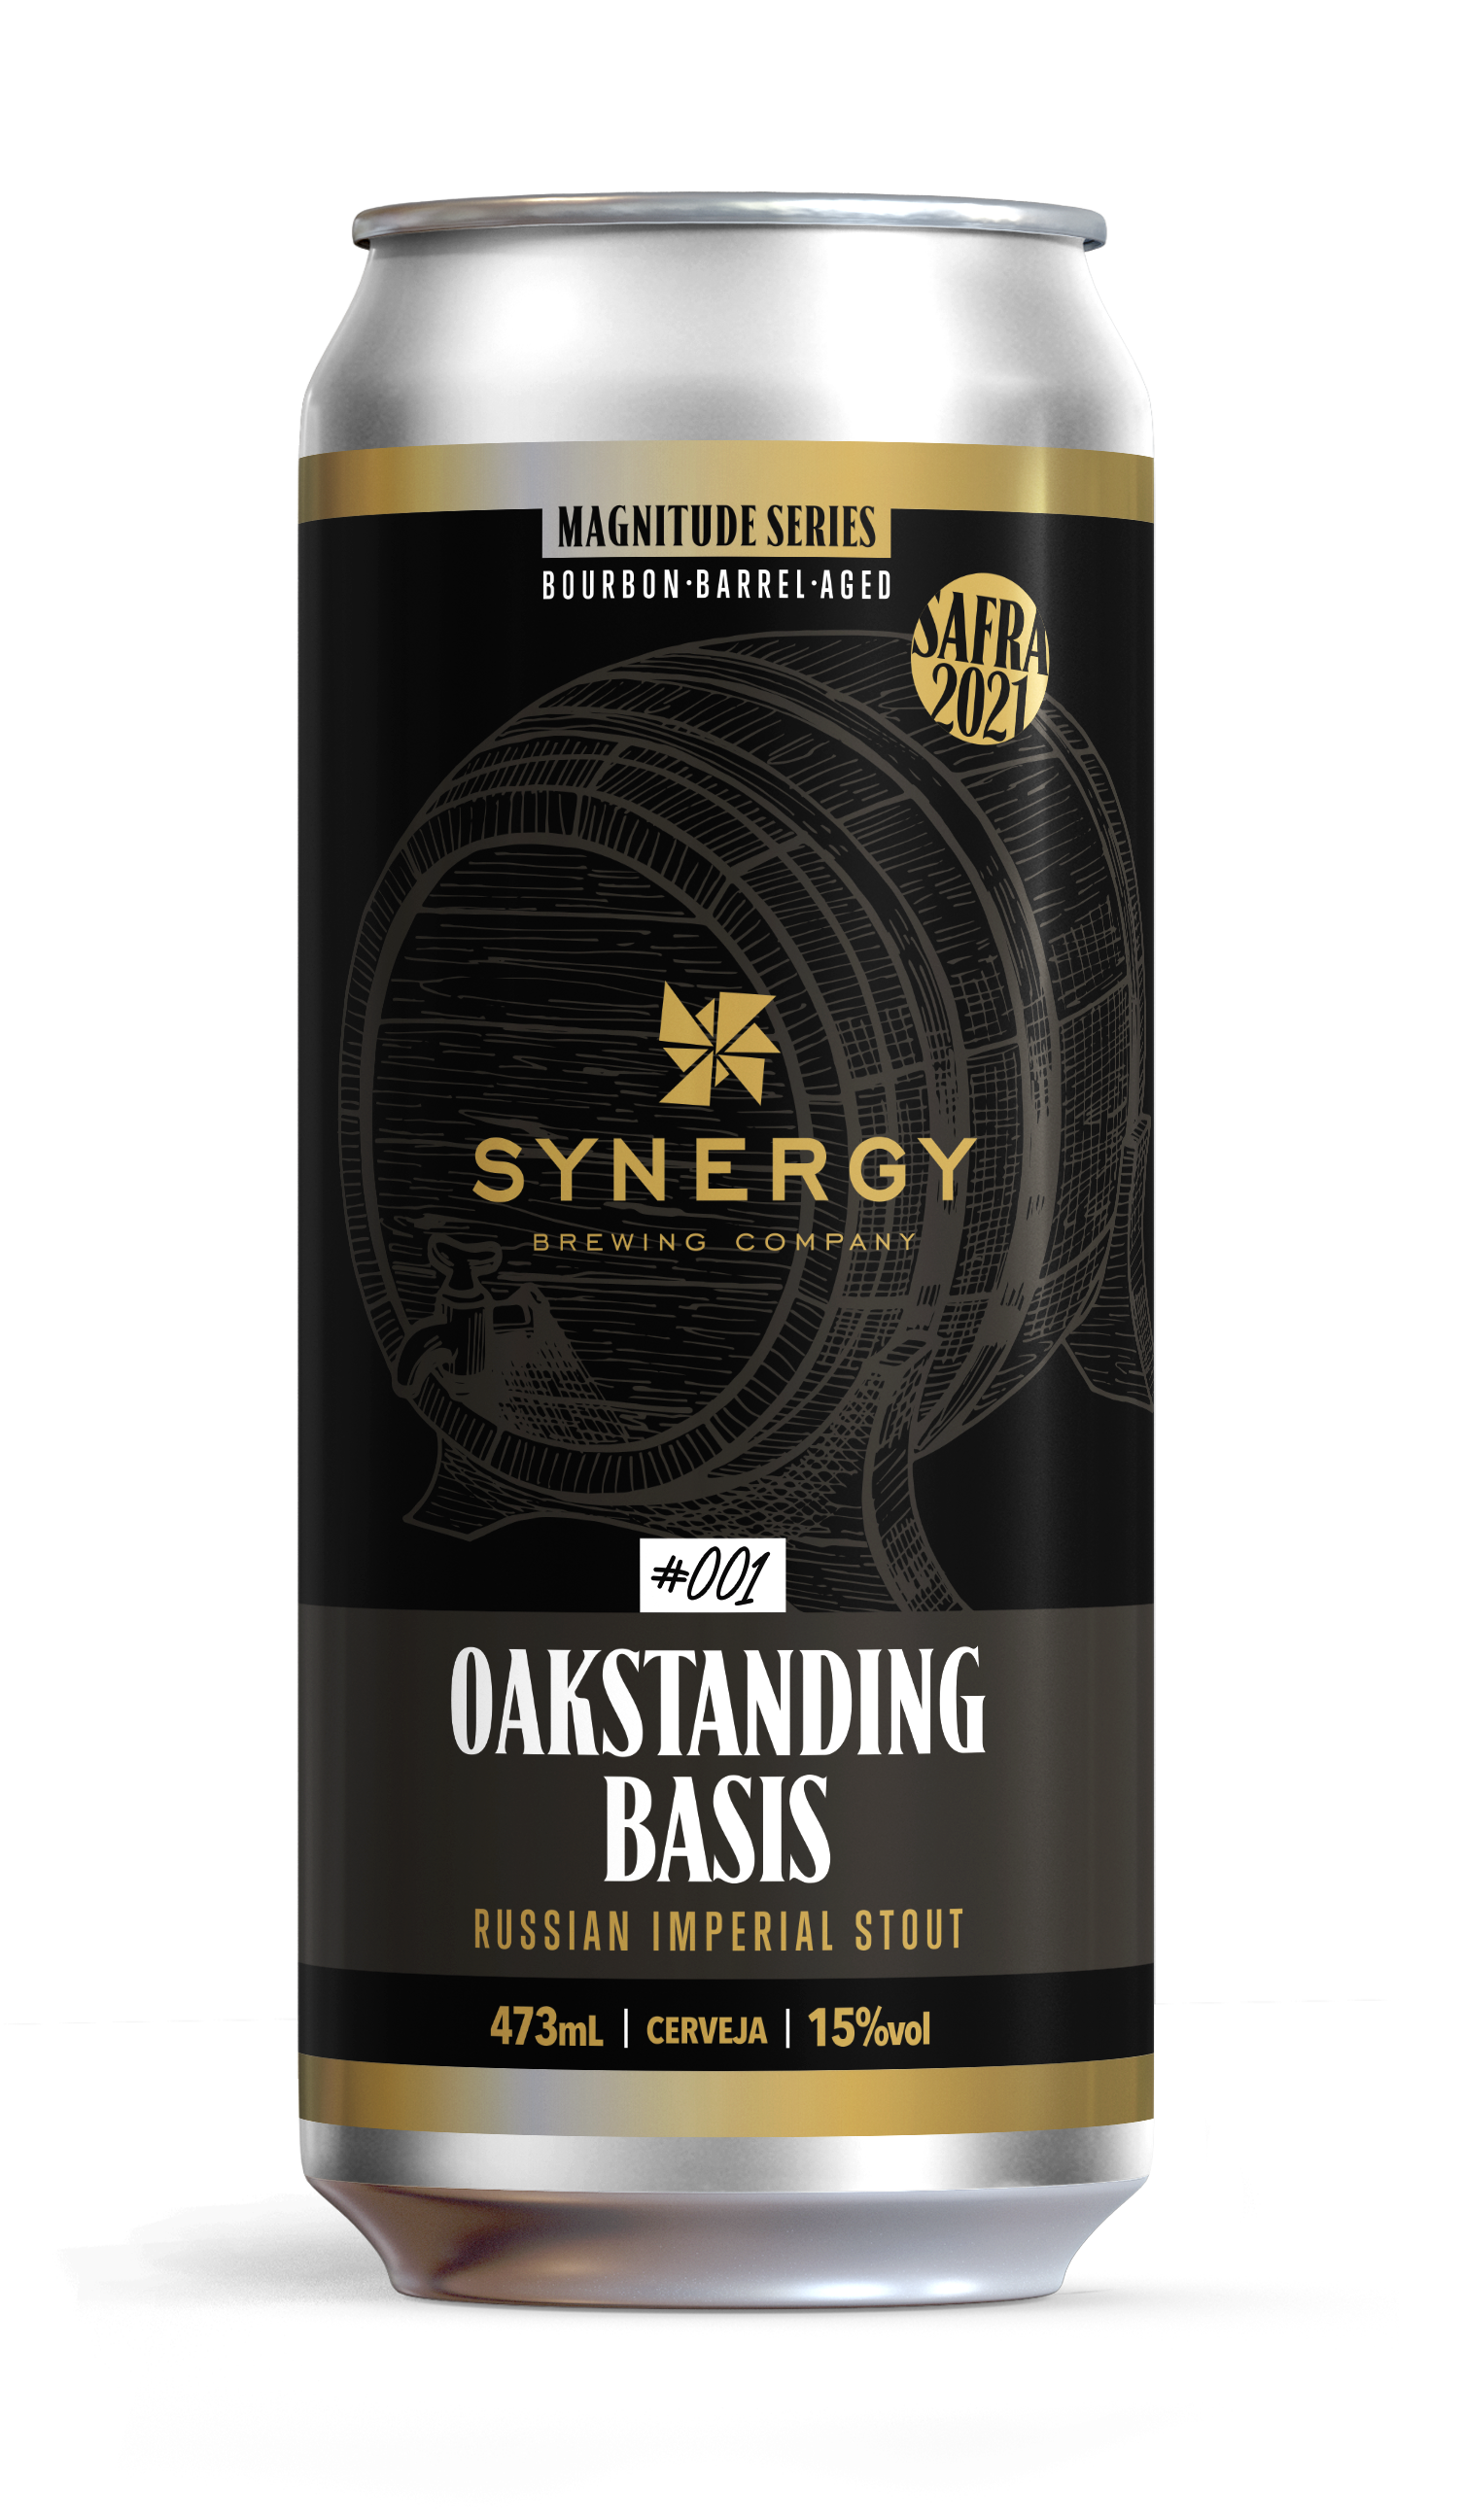 Cerveja Artesanal Oakstanding Basis da Synergy